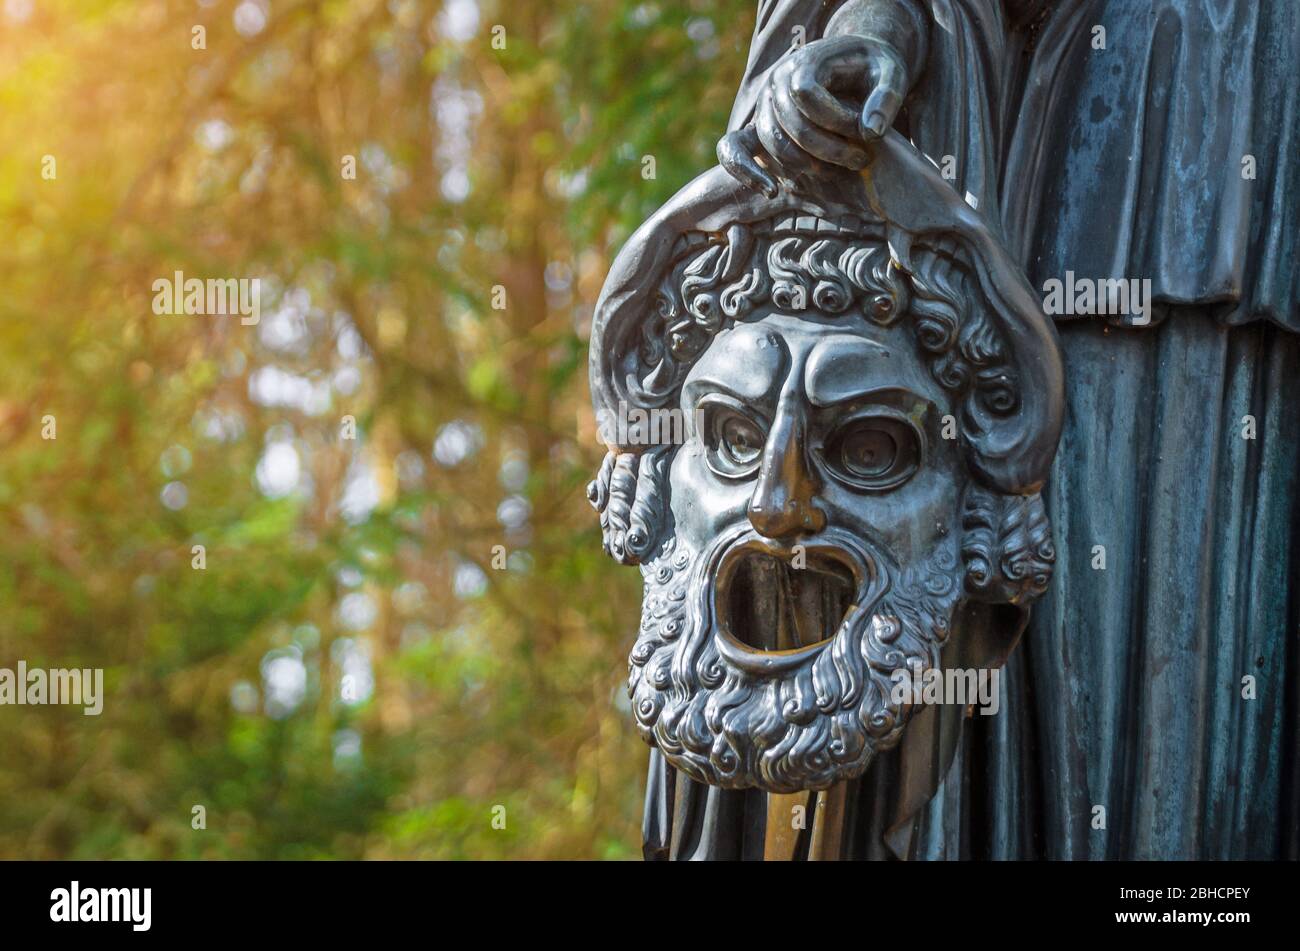 Masque de sculpture en cuivre dans un parc forestier. Banque D'Images